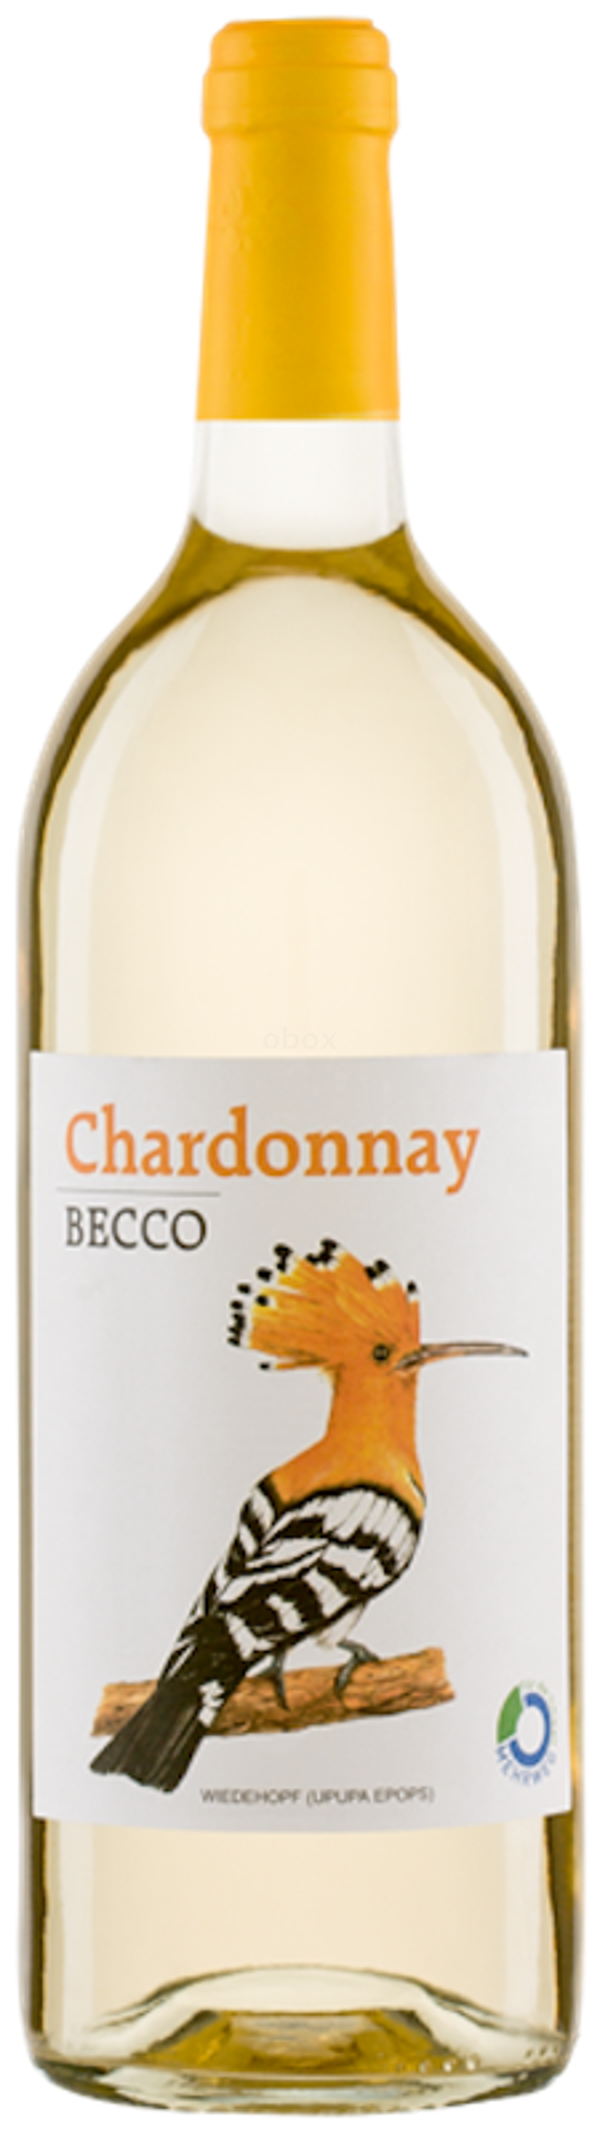 Produktfoto zu BECCO Chardonnay IGT, trocken - 1l Mehrweg